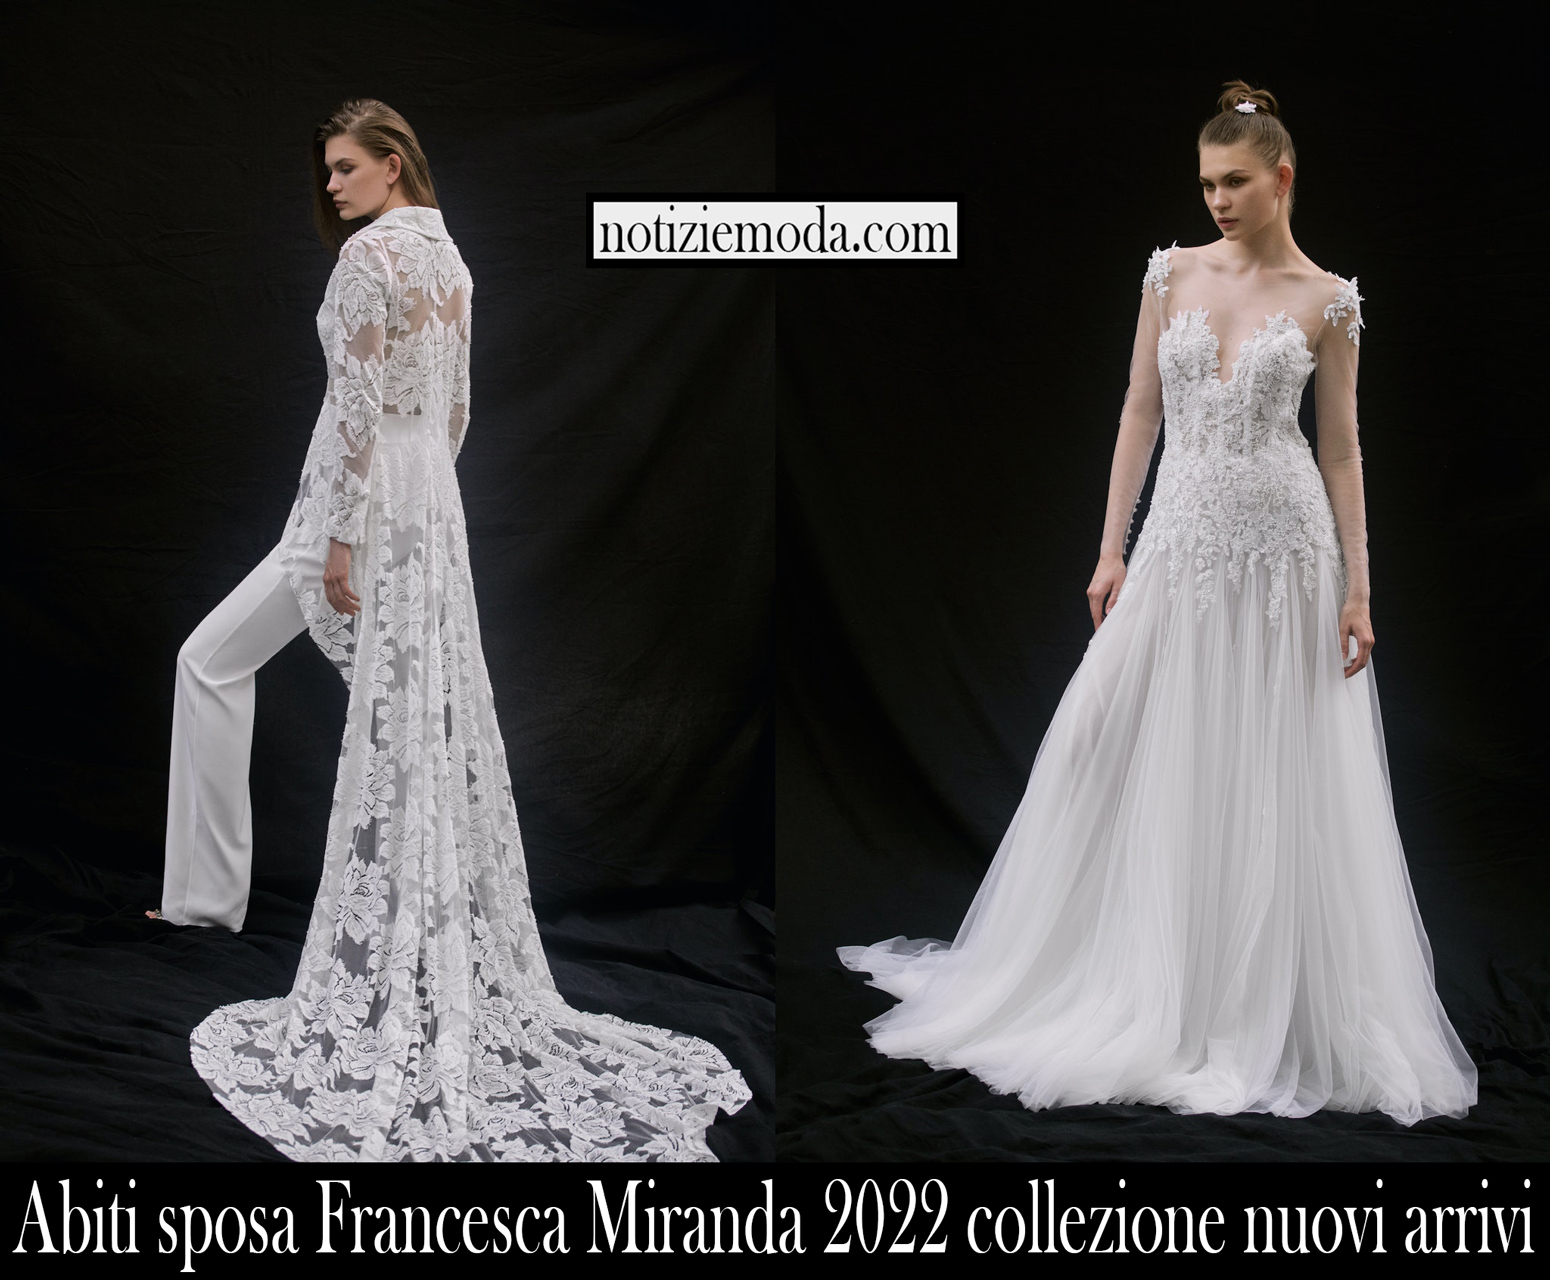 Abiti sposa Francesca Miranda 2022 collezione nuovi arrivi